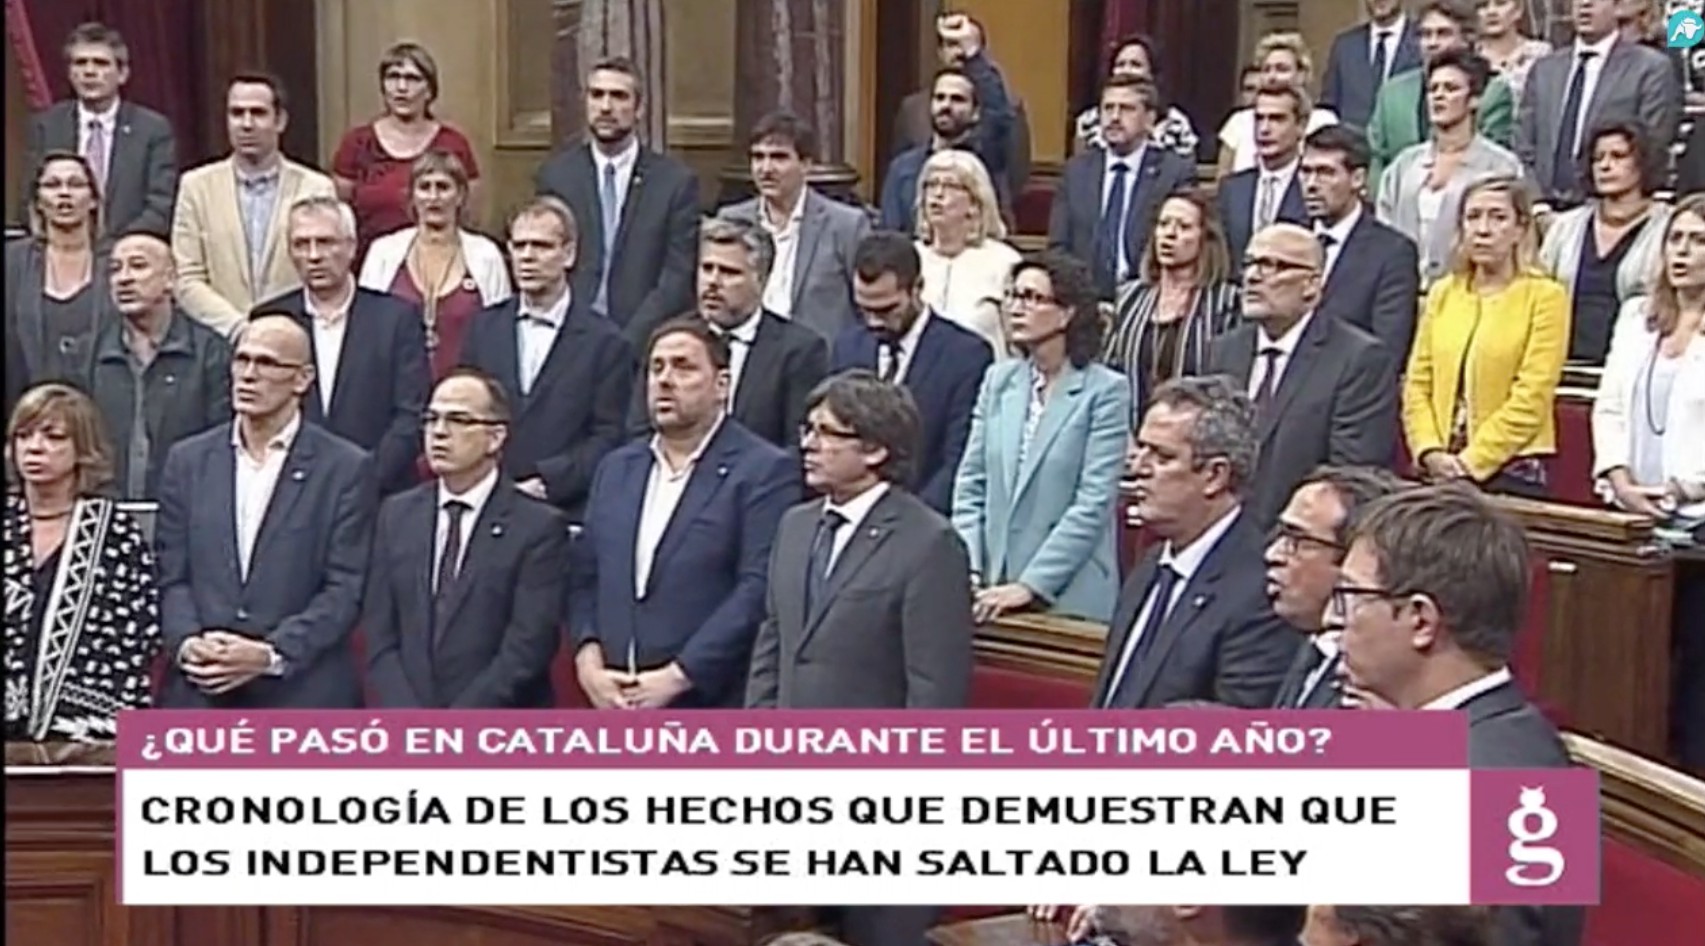 Así se salta el independentismo la ley en Cataluña